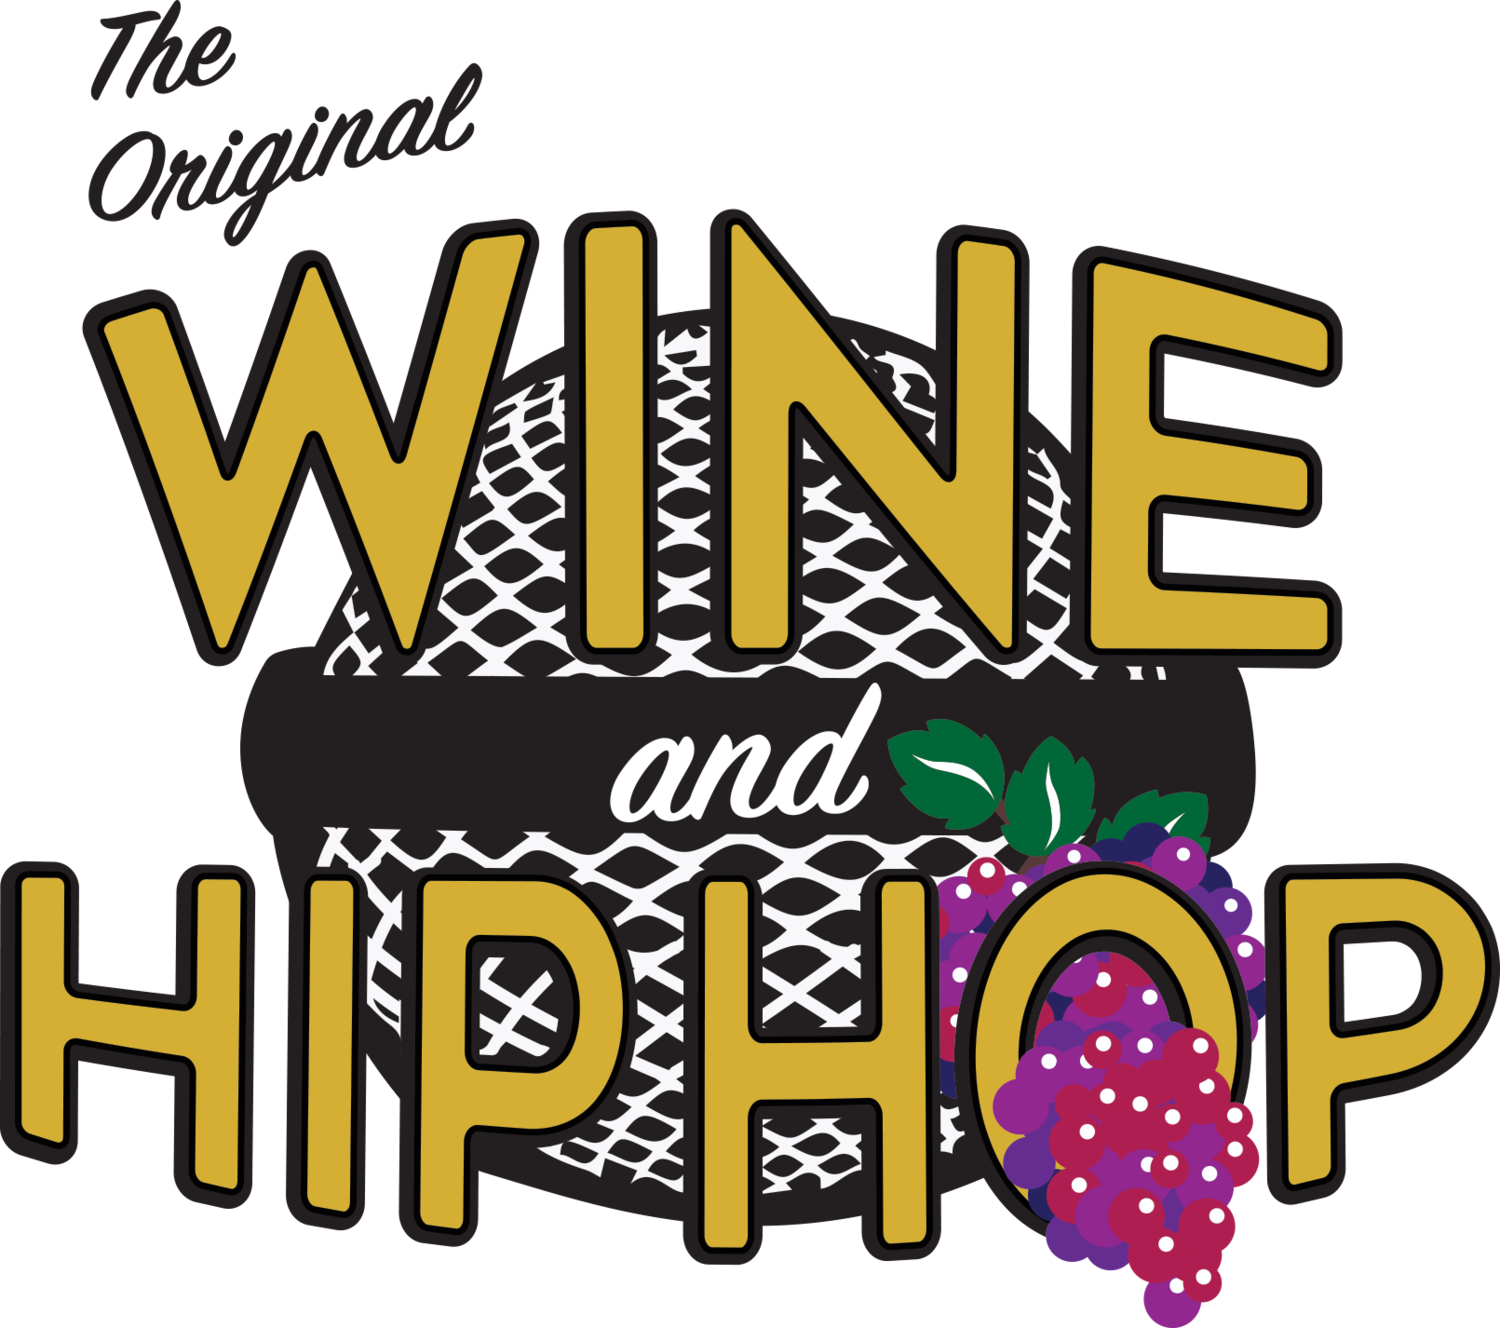 The Original Wine & Hip Hop 